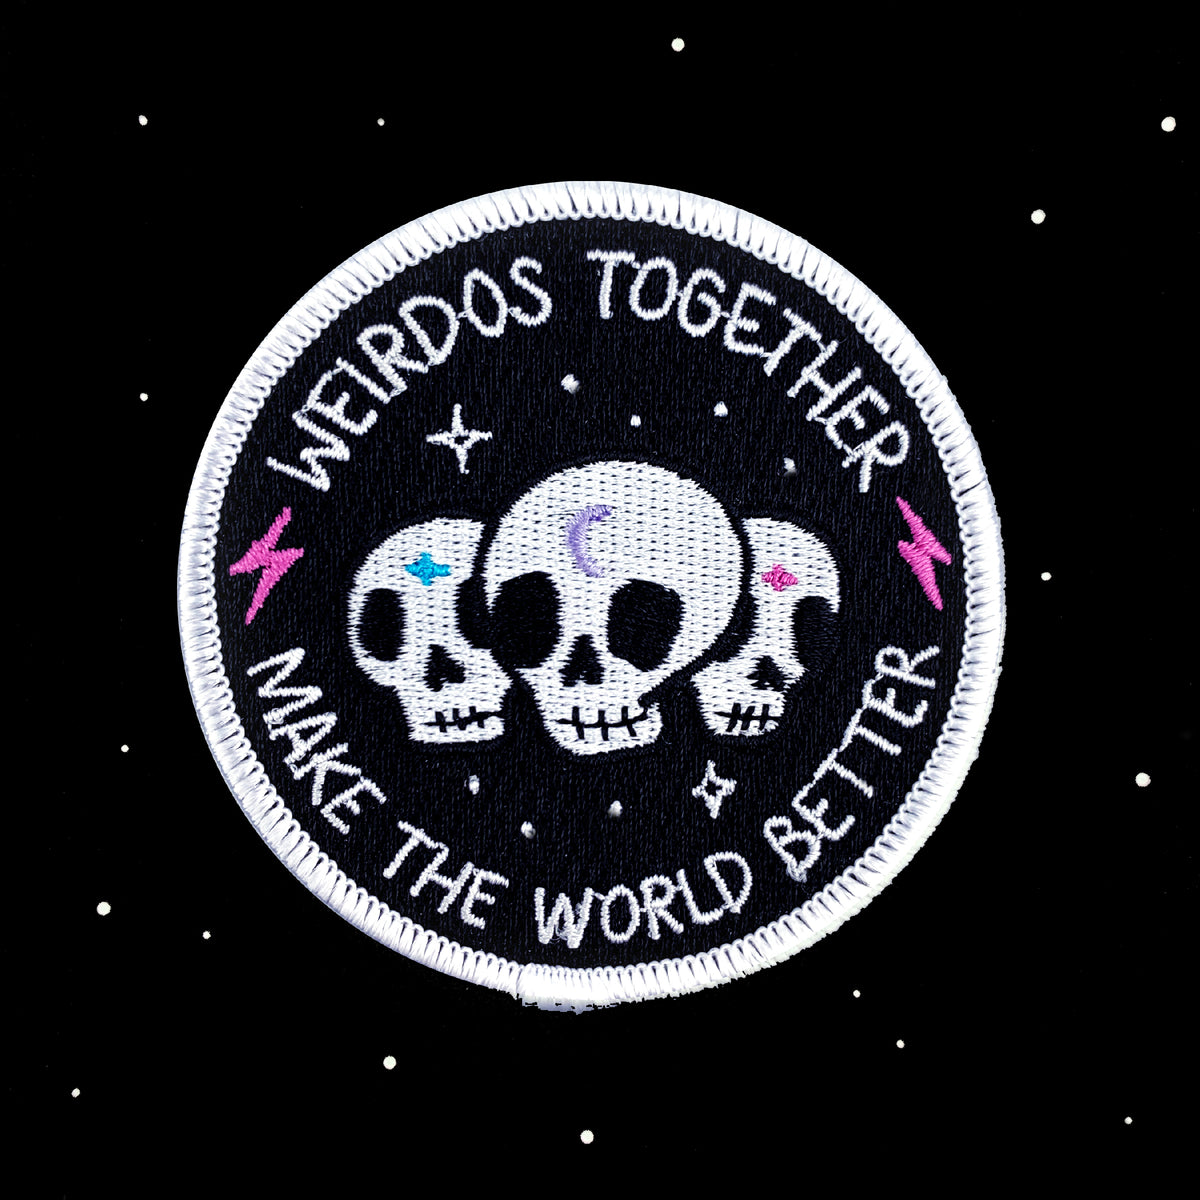 Weirdos Together // Patch